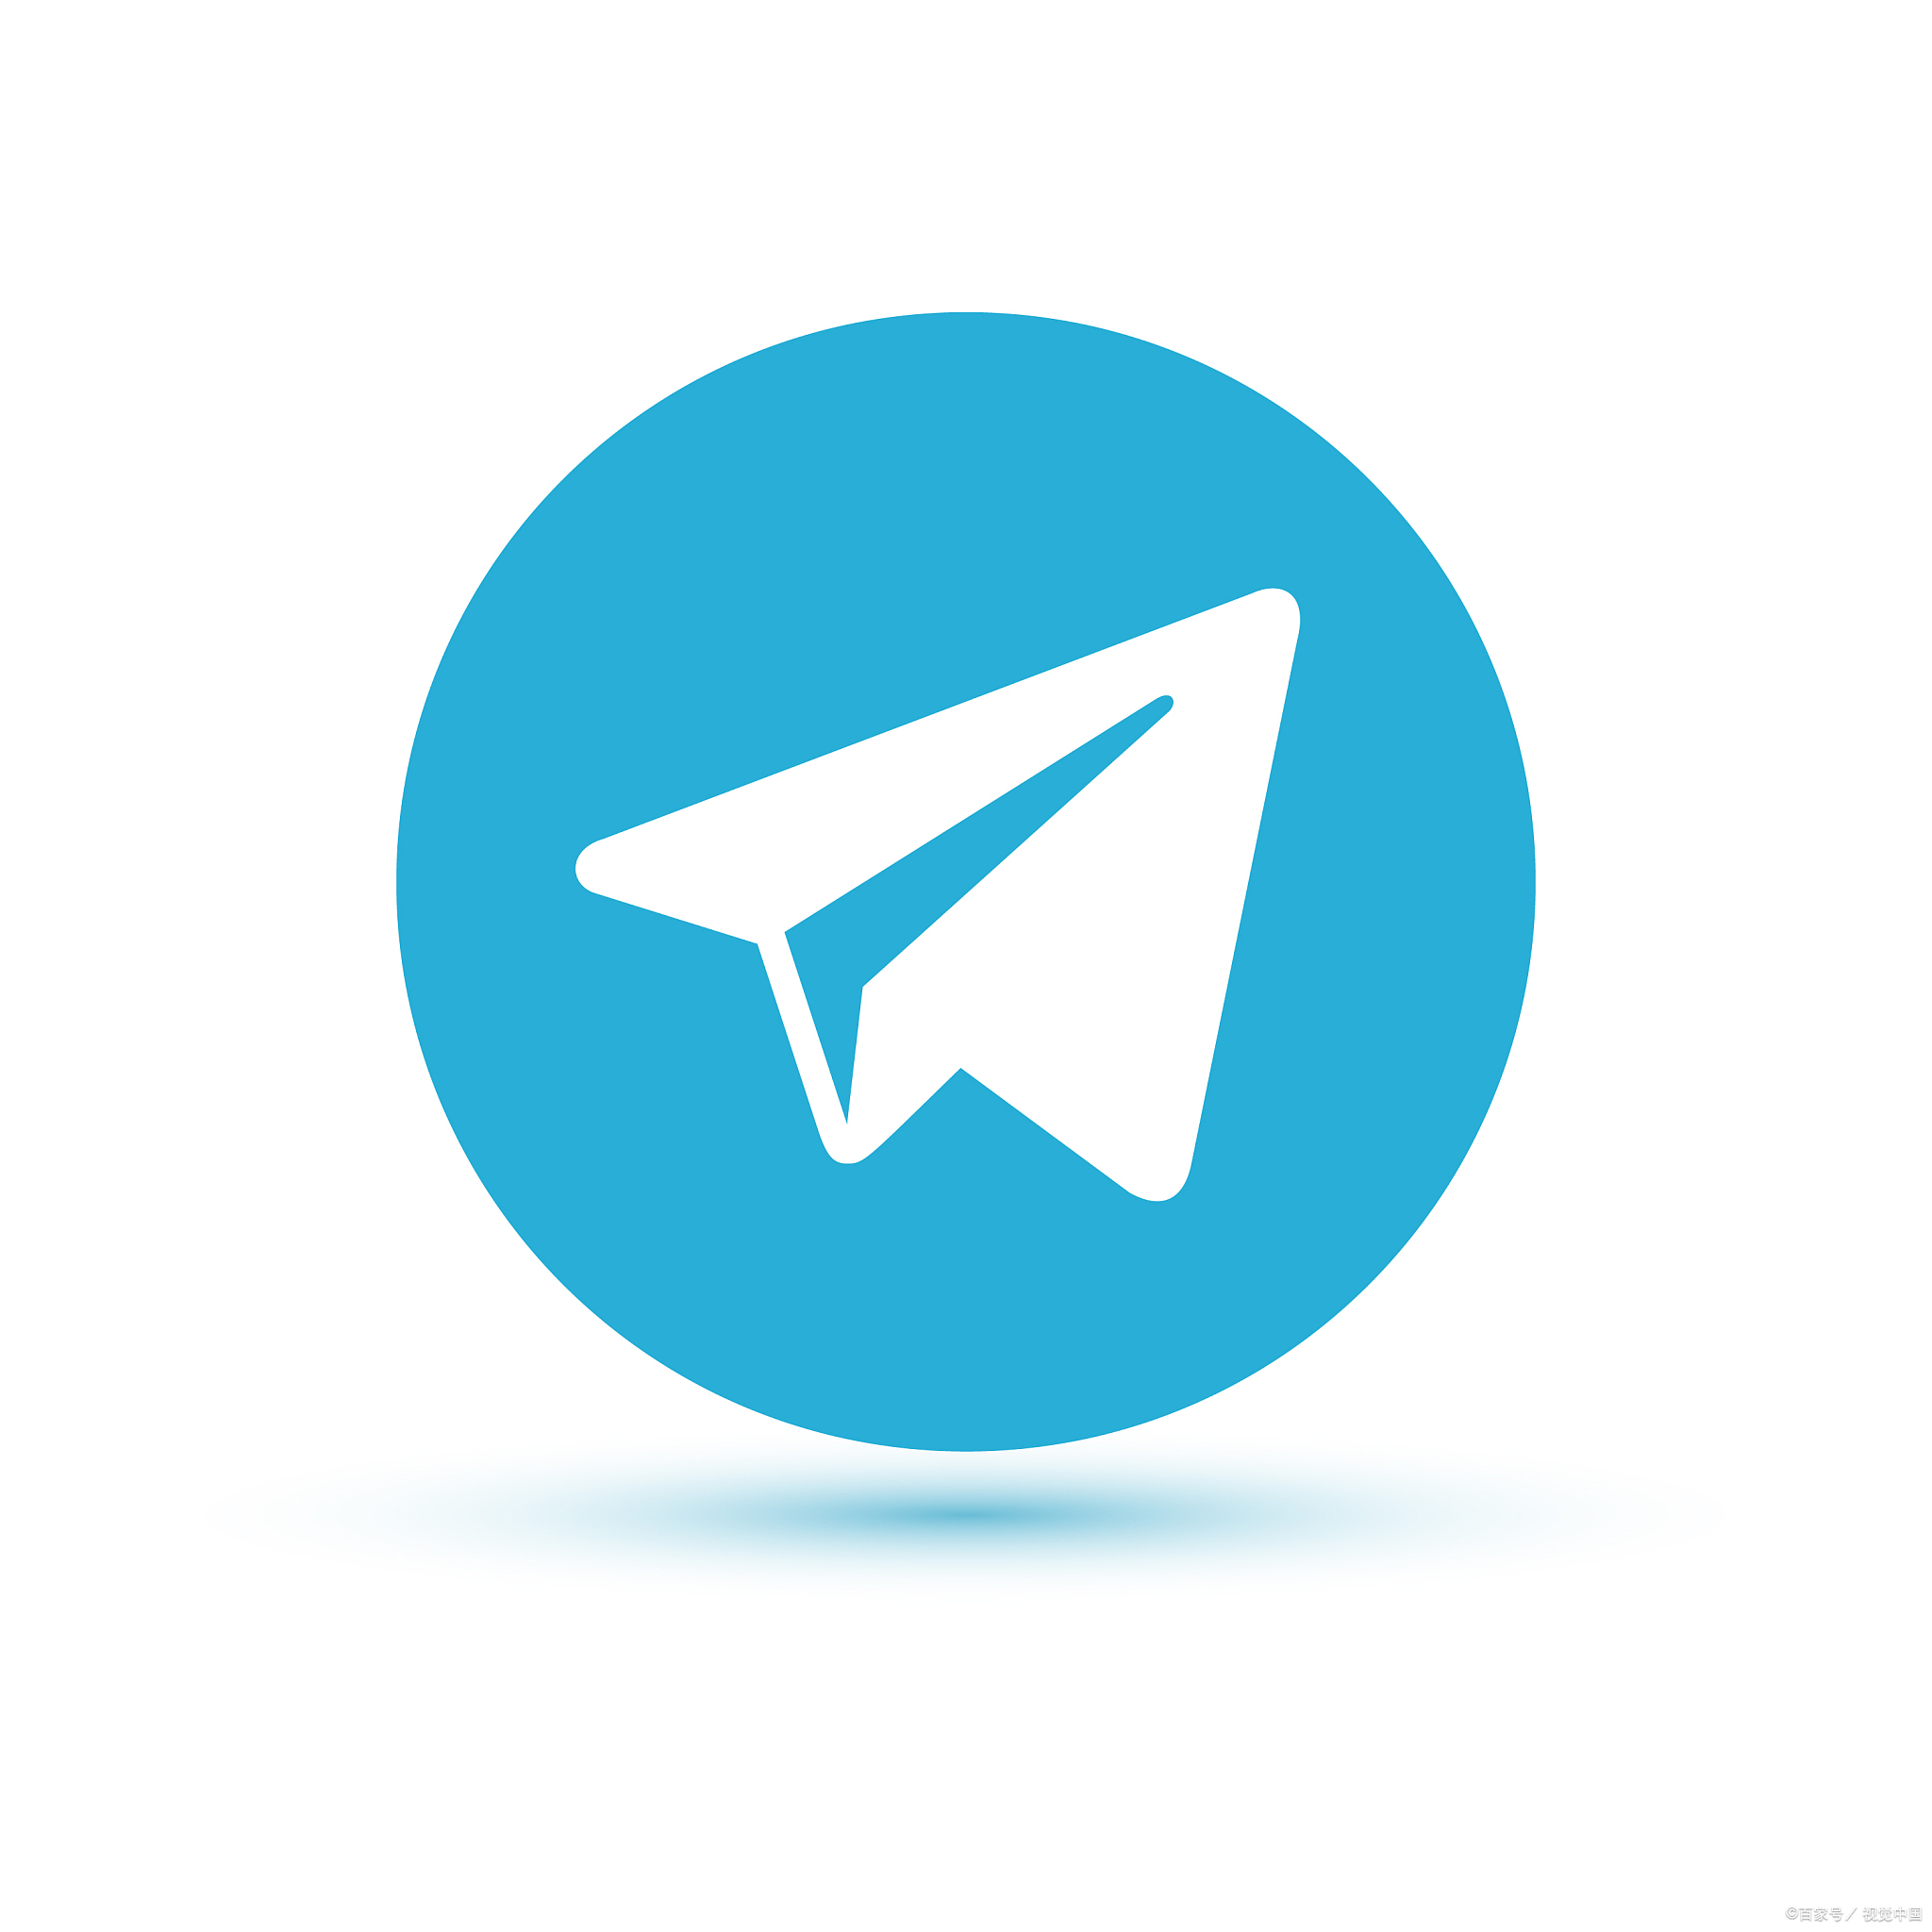 [telegram大全]Telegram百度百科